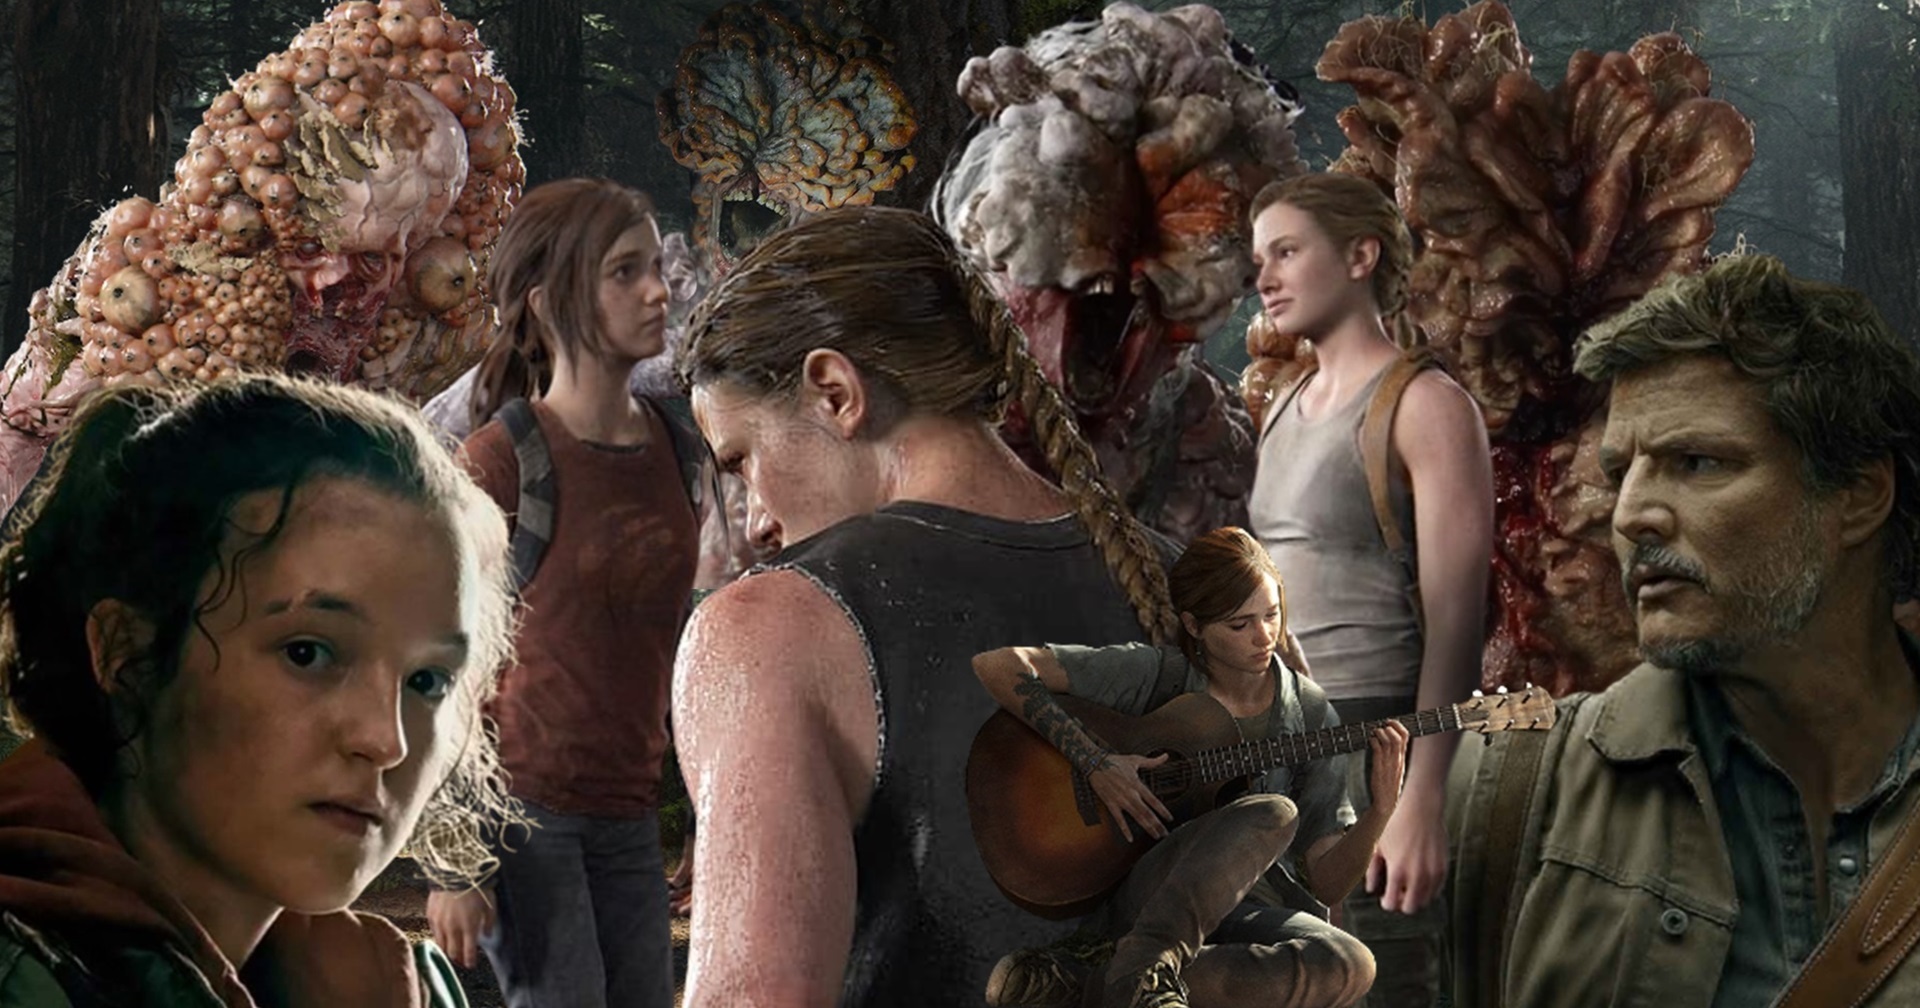 รวมความเป็นไปได้ในซีรีส์ The Last Of Us Season 2 ที่ทางทีมสร้างประกาศออกมา